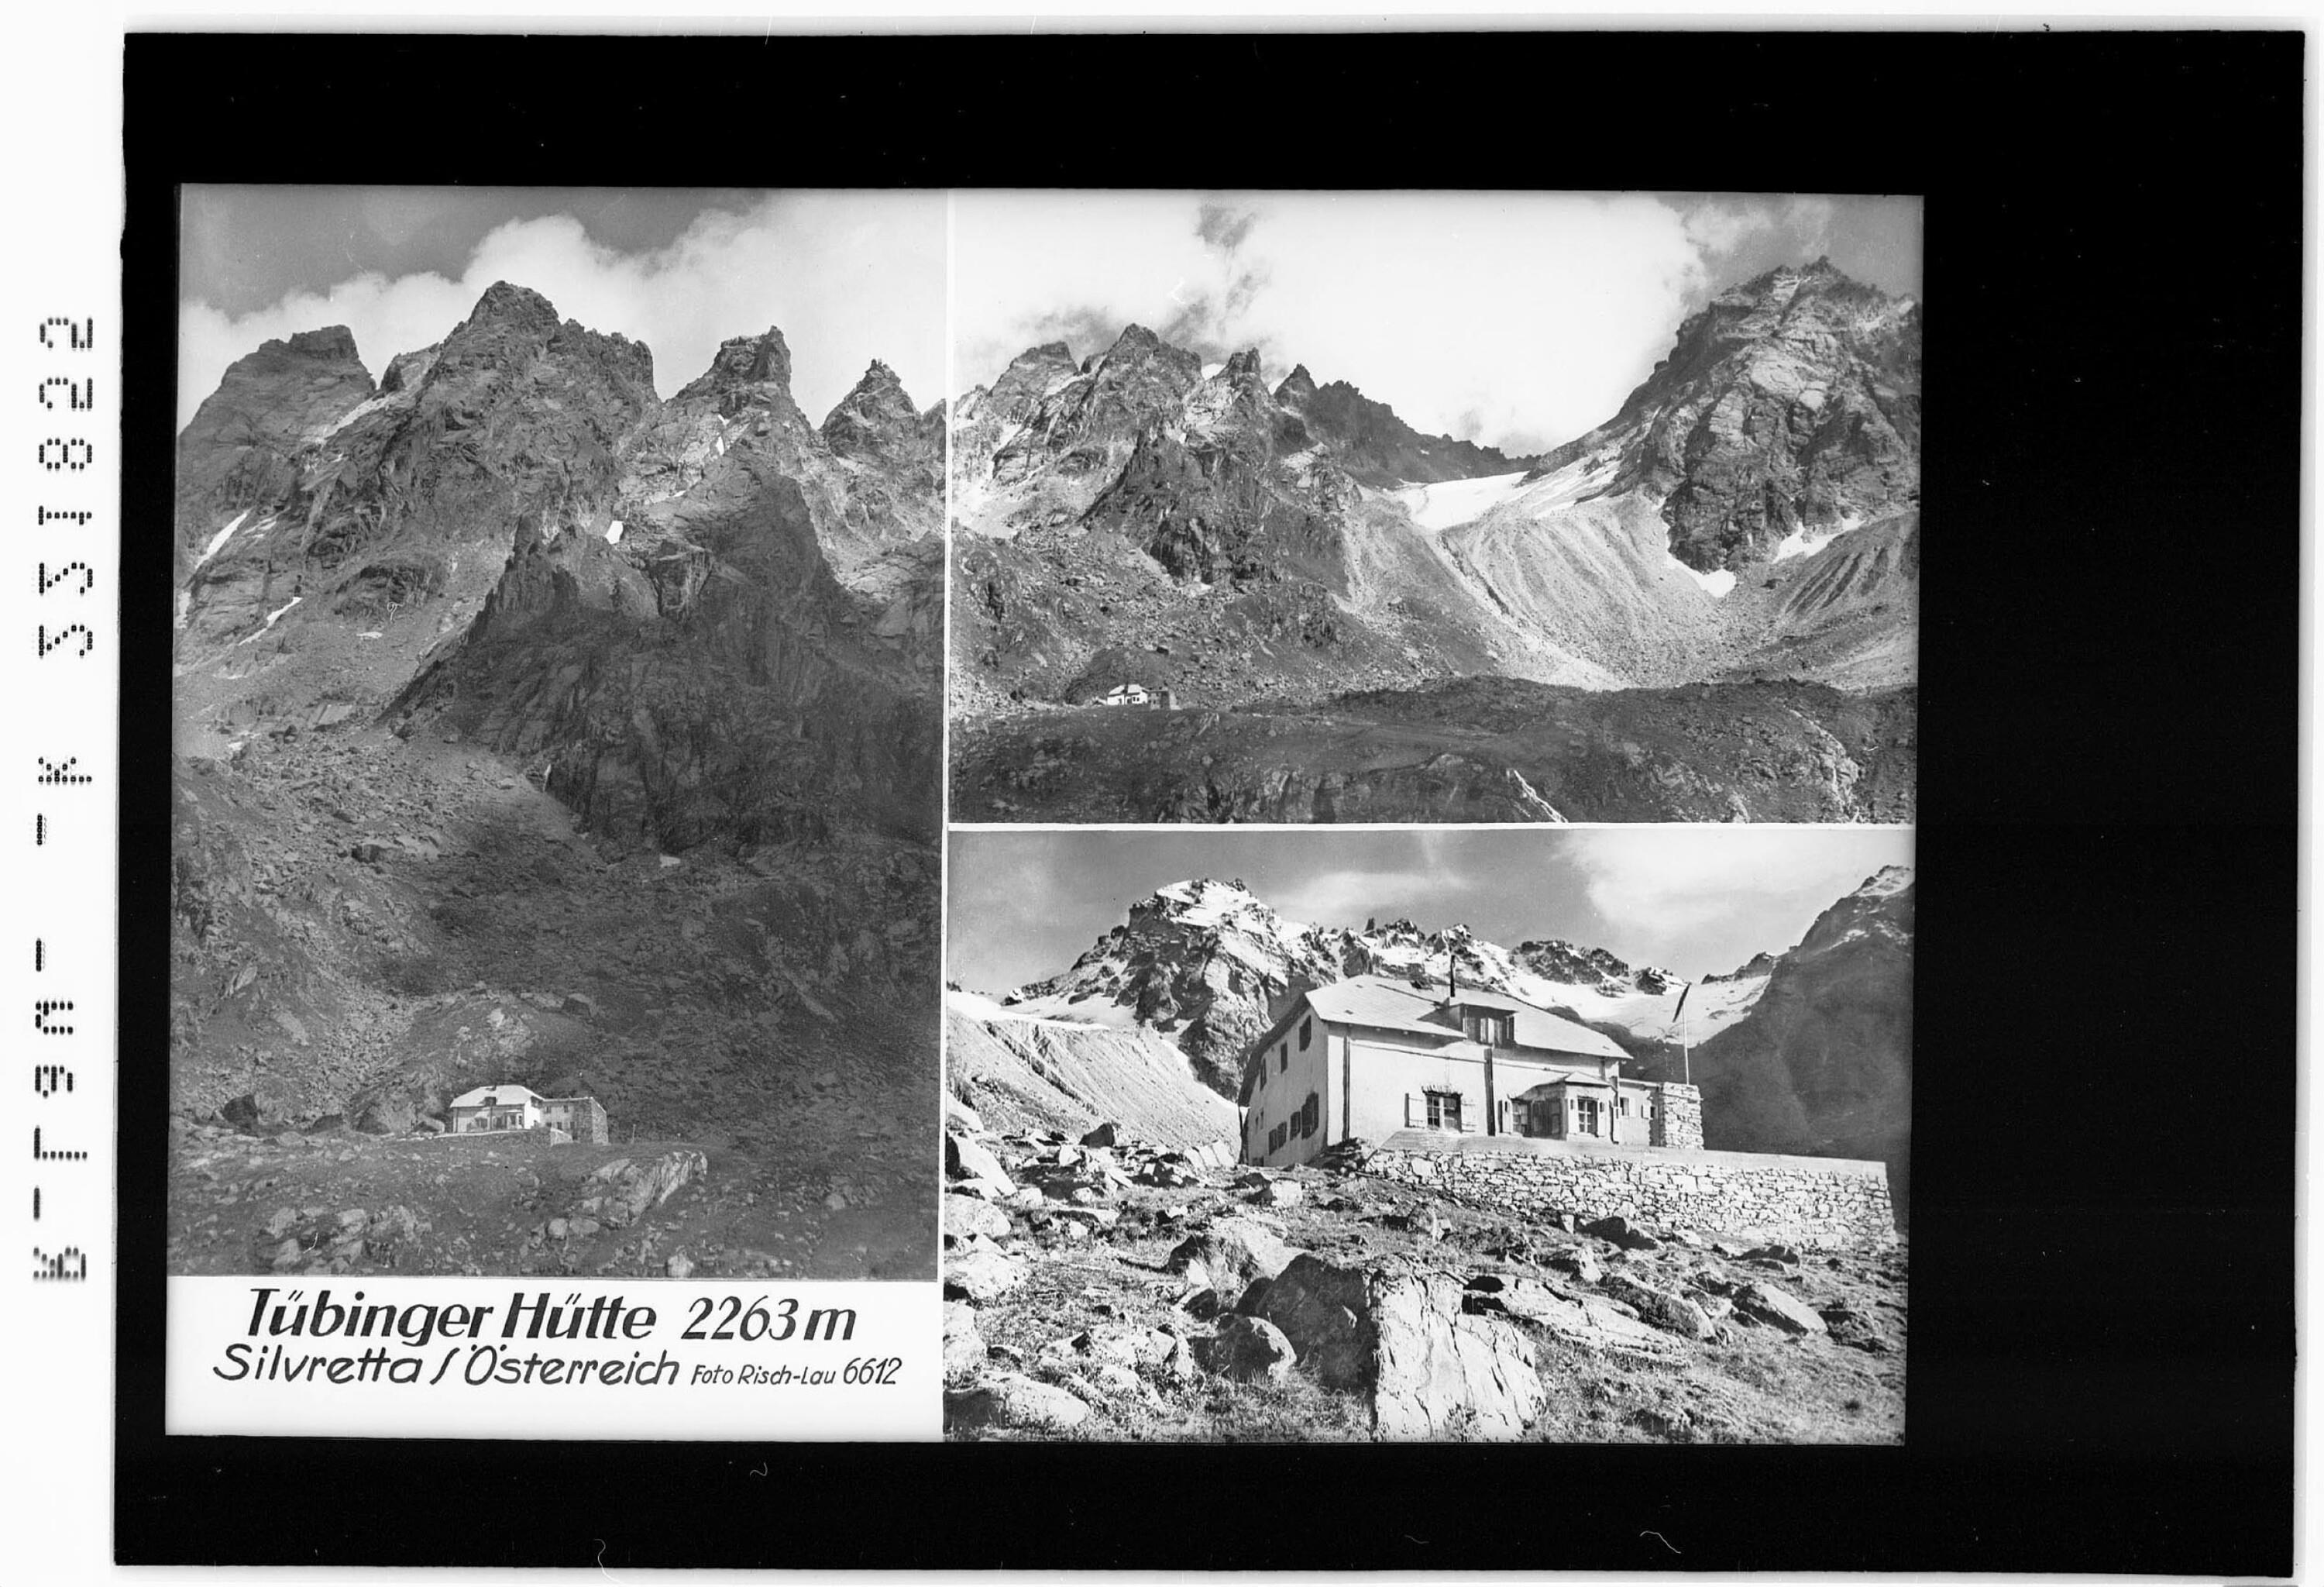 Tübinger Hütte 2263 m / Silvretta / Österreich></div>


    <hr>
    <div class=